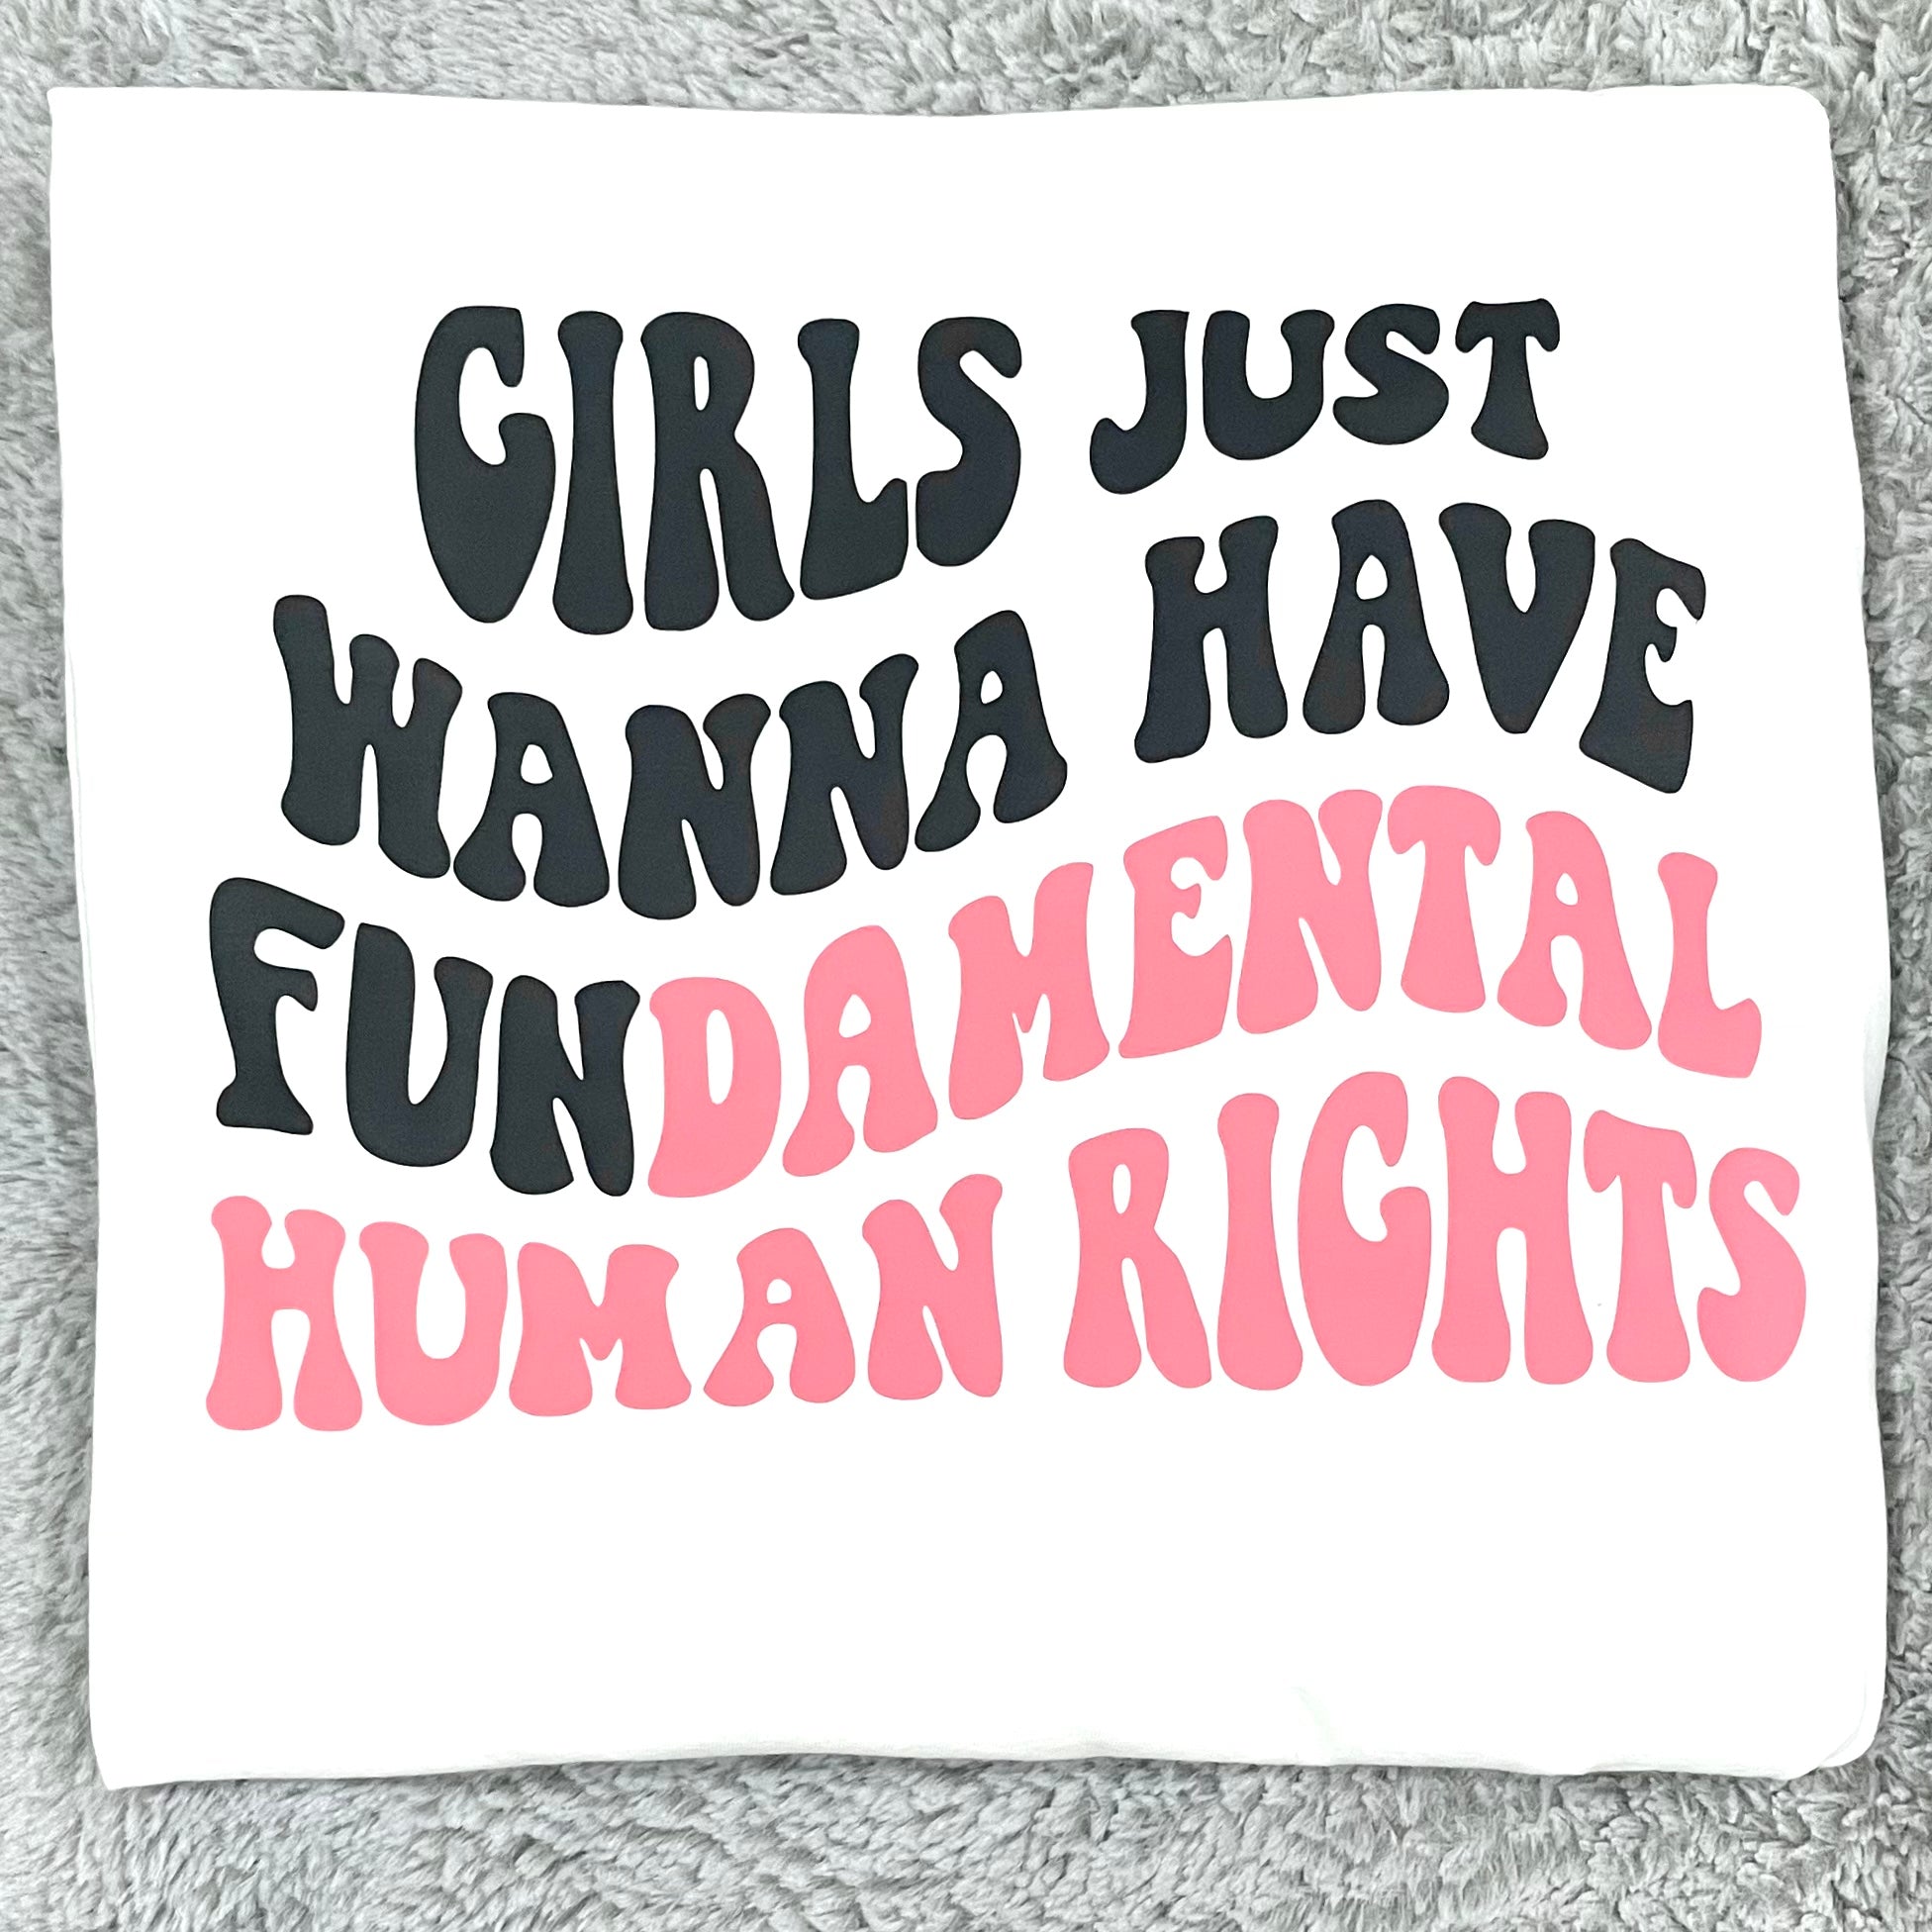 Girls Just Wanna Have Fun(damental) Human Rights